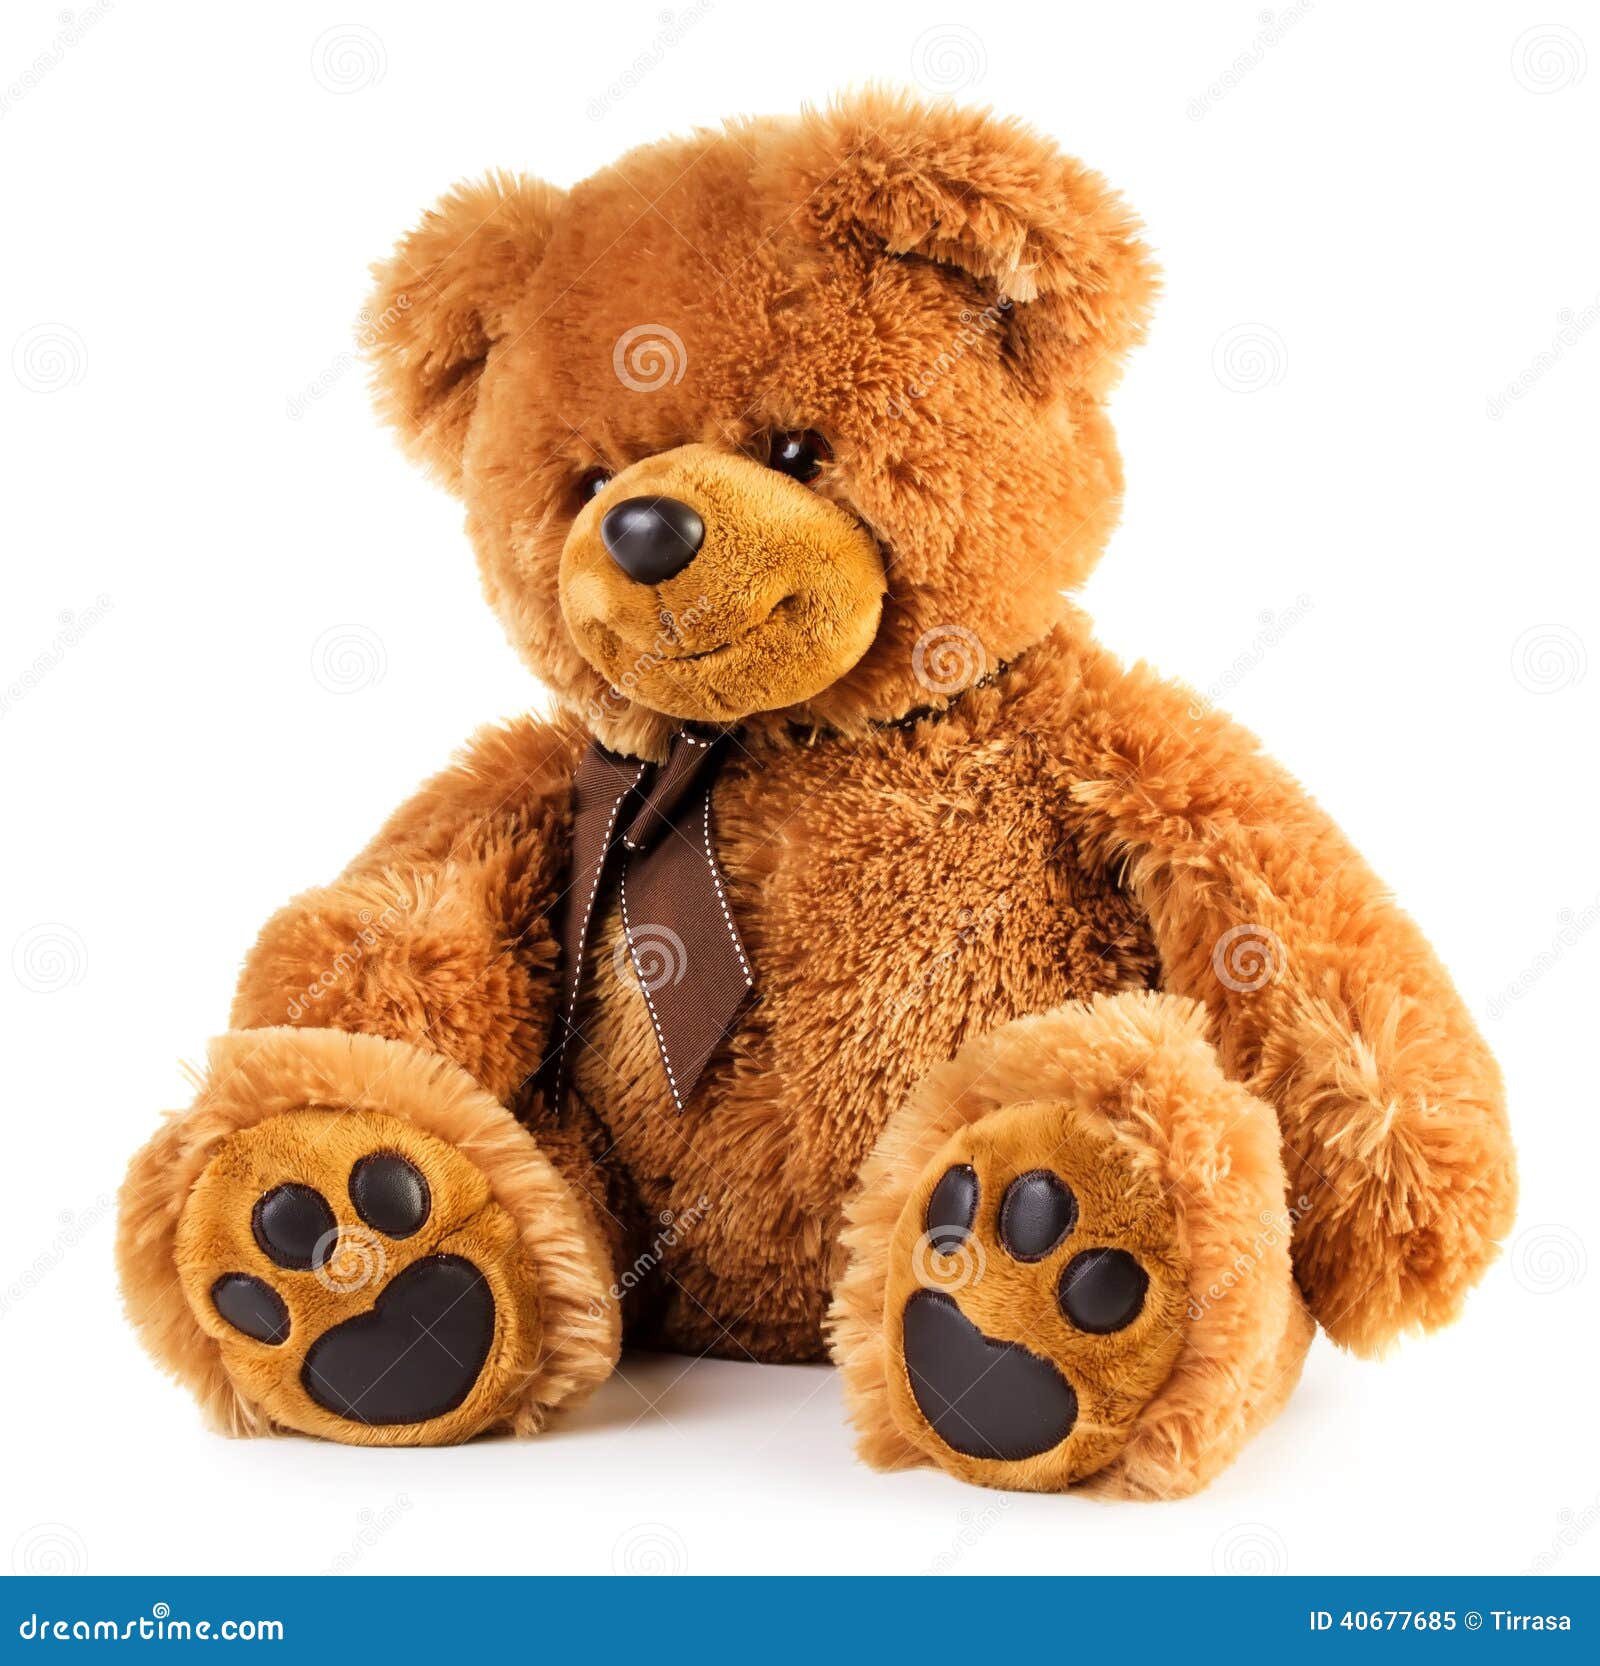 toy teddy bear